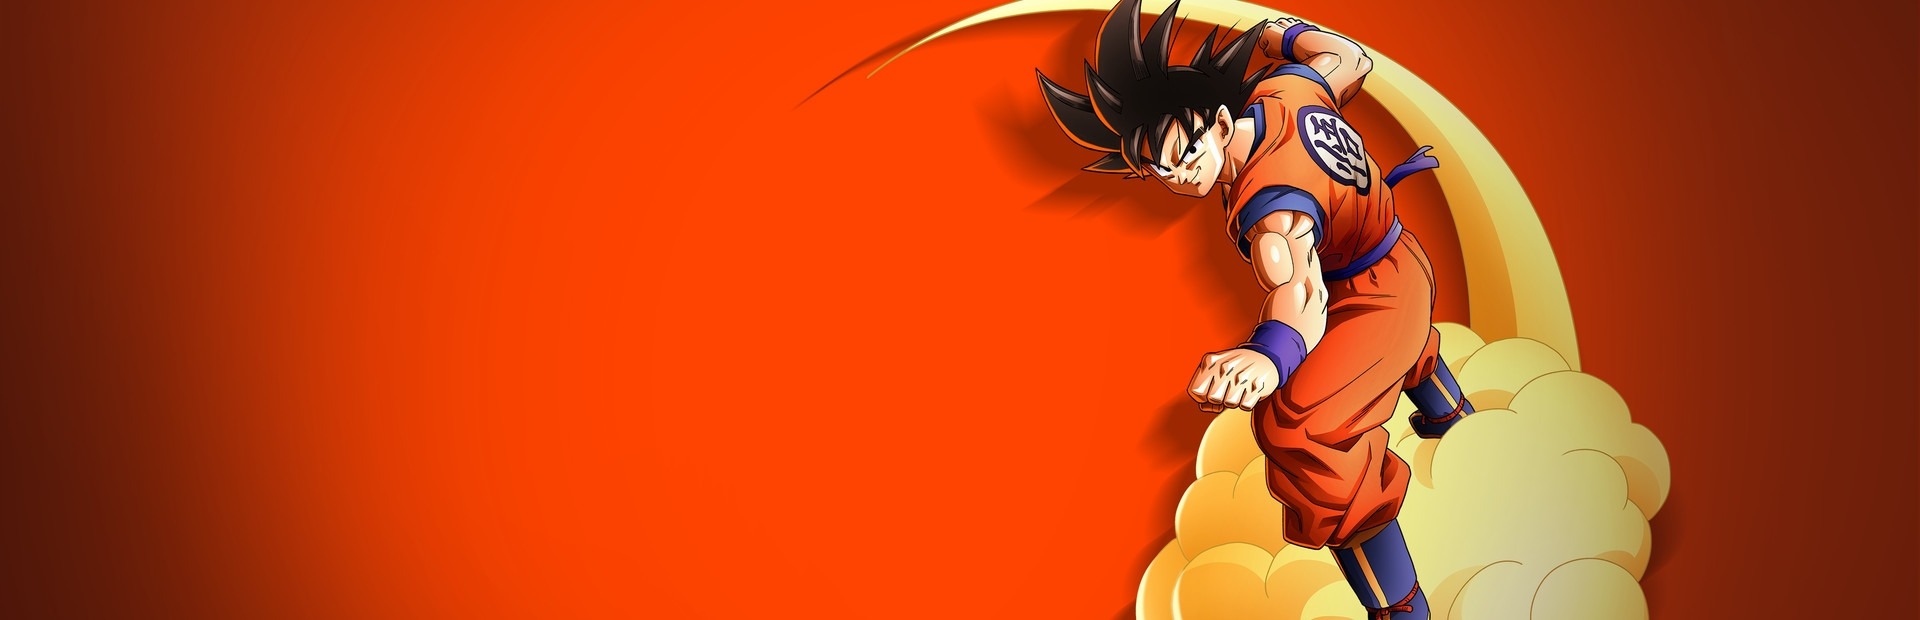 Banner Dragon Ball Z: Kakarot -Trunks - The Warrior of Hope